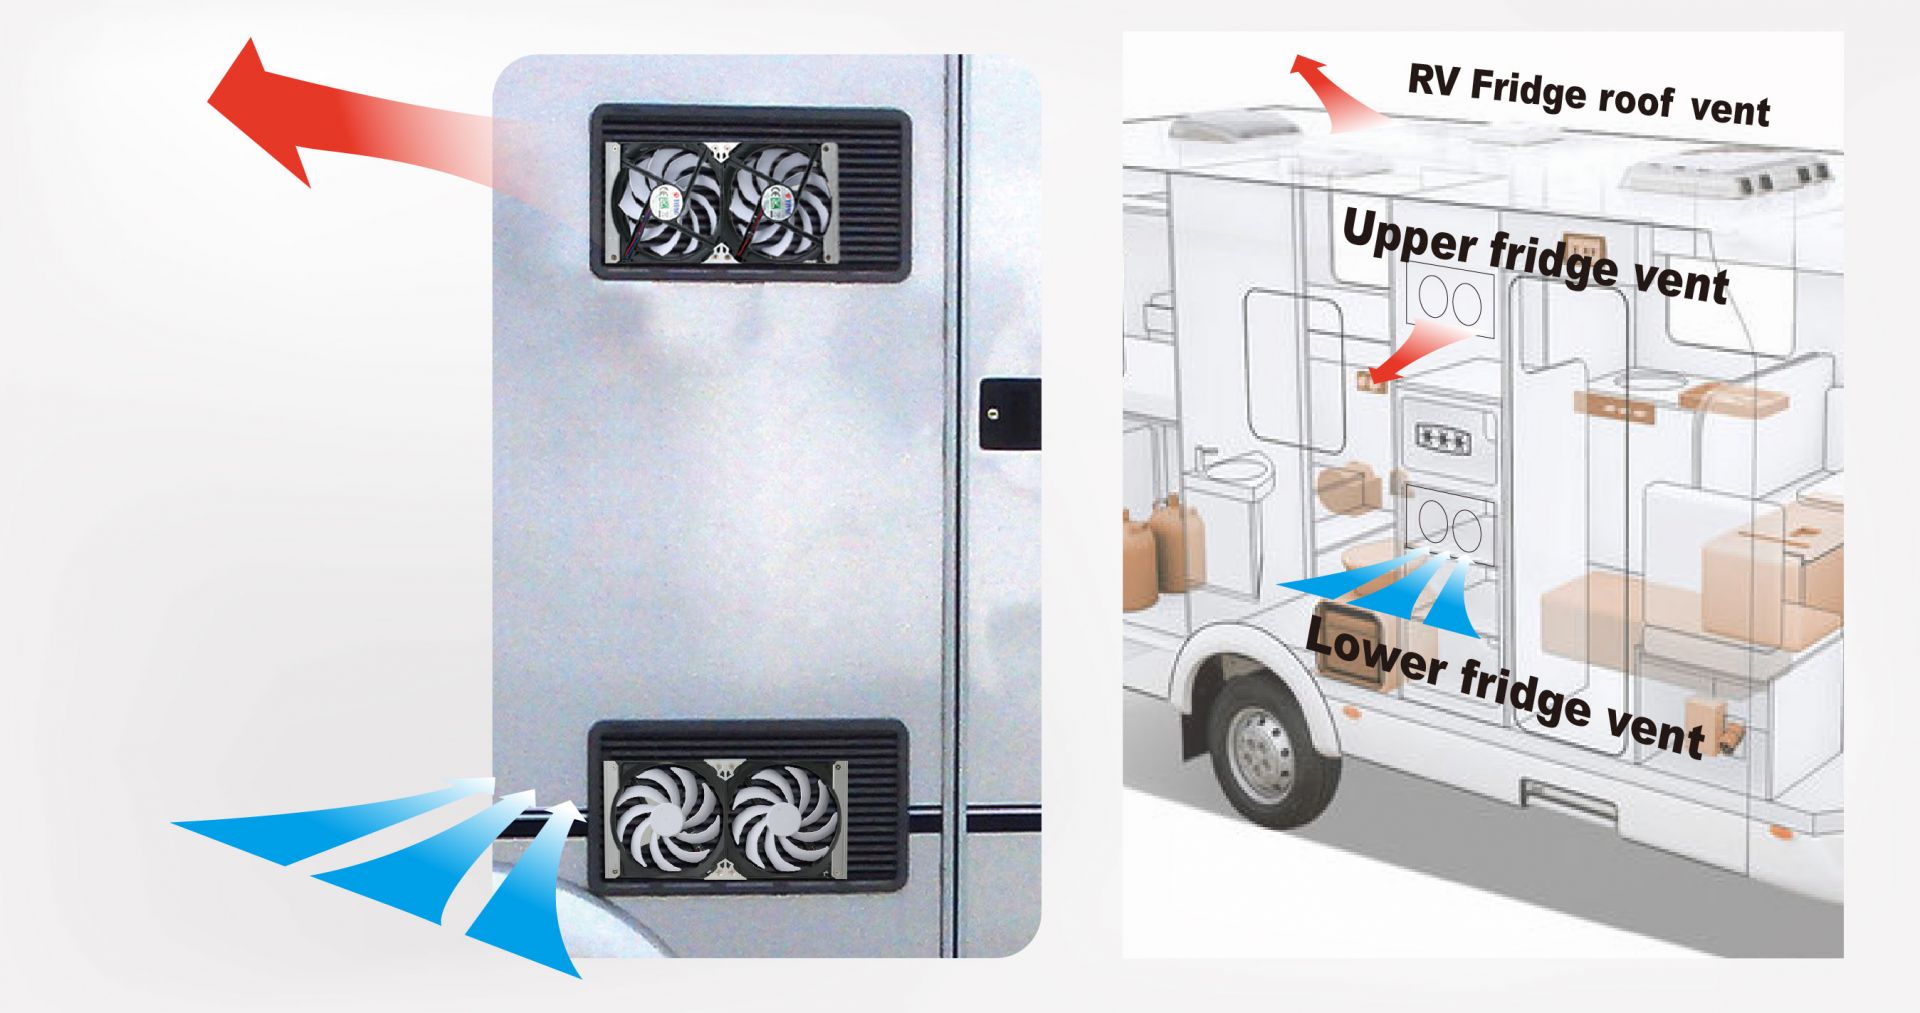 올바른 환기 장소는 RV 냉장고의 순환을 촉진하는 열쇠입니다.